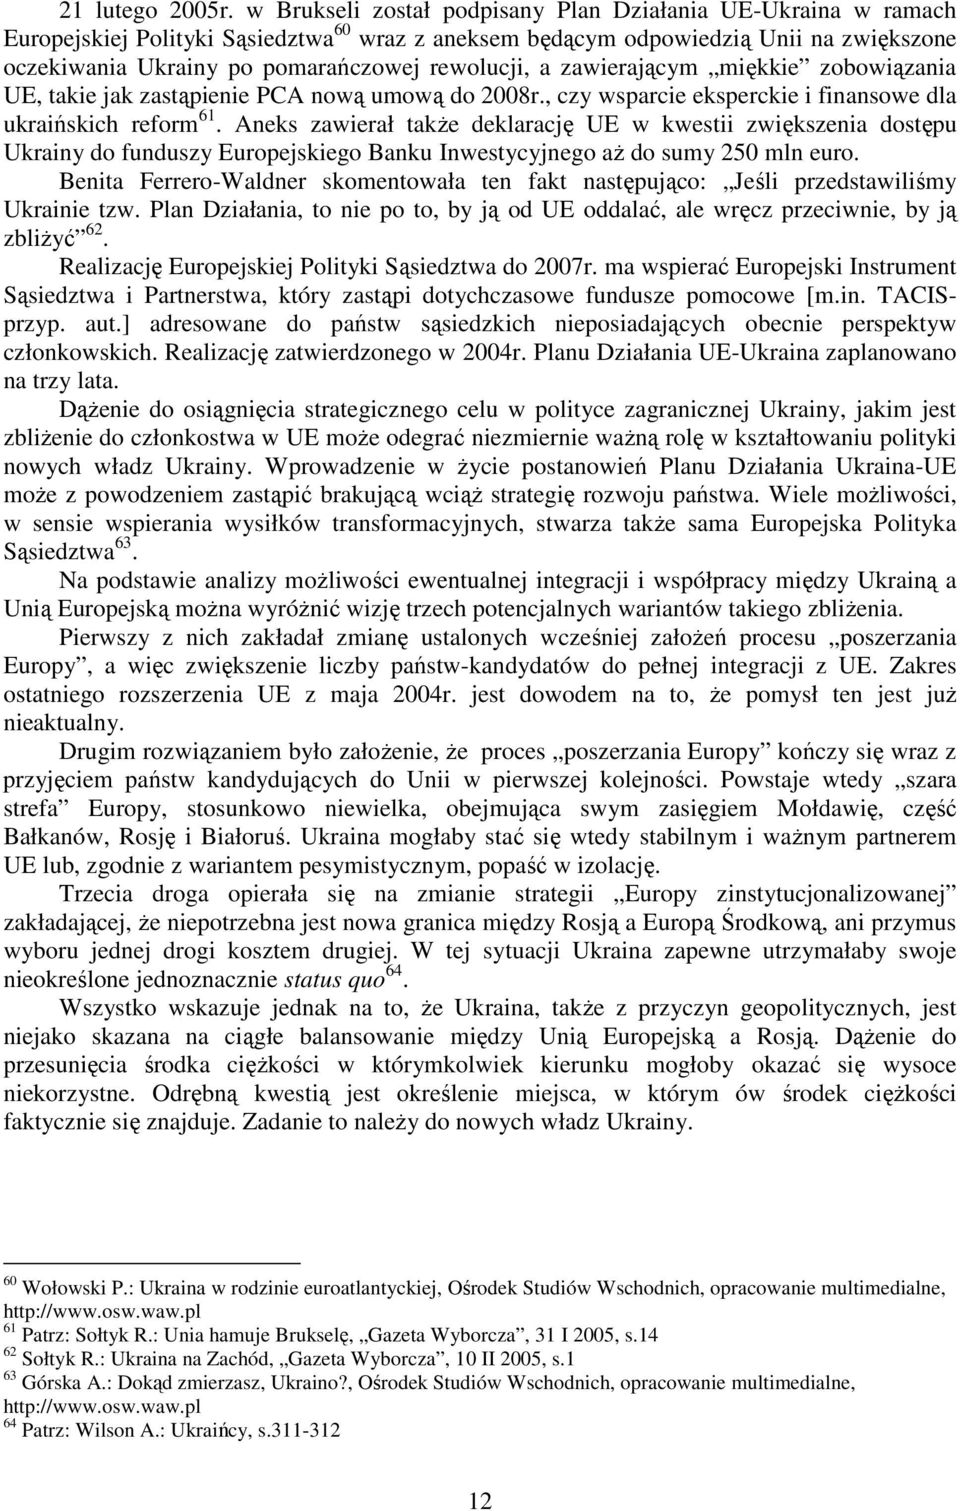 rewolucji, a zawierającym miękkie zobowiązania UE, takie jak zastąpienie PCA nową umową do 2008r., czy wsparcie eksperckie i finansowe dla ukraińskich reform 61.